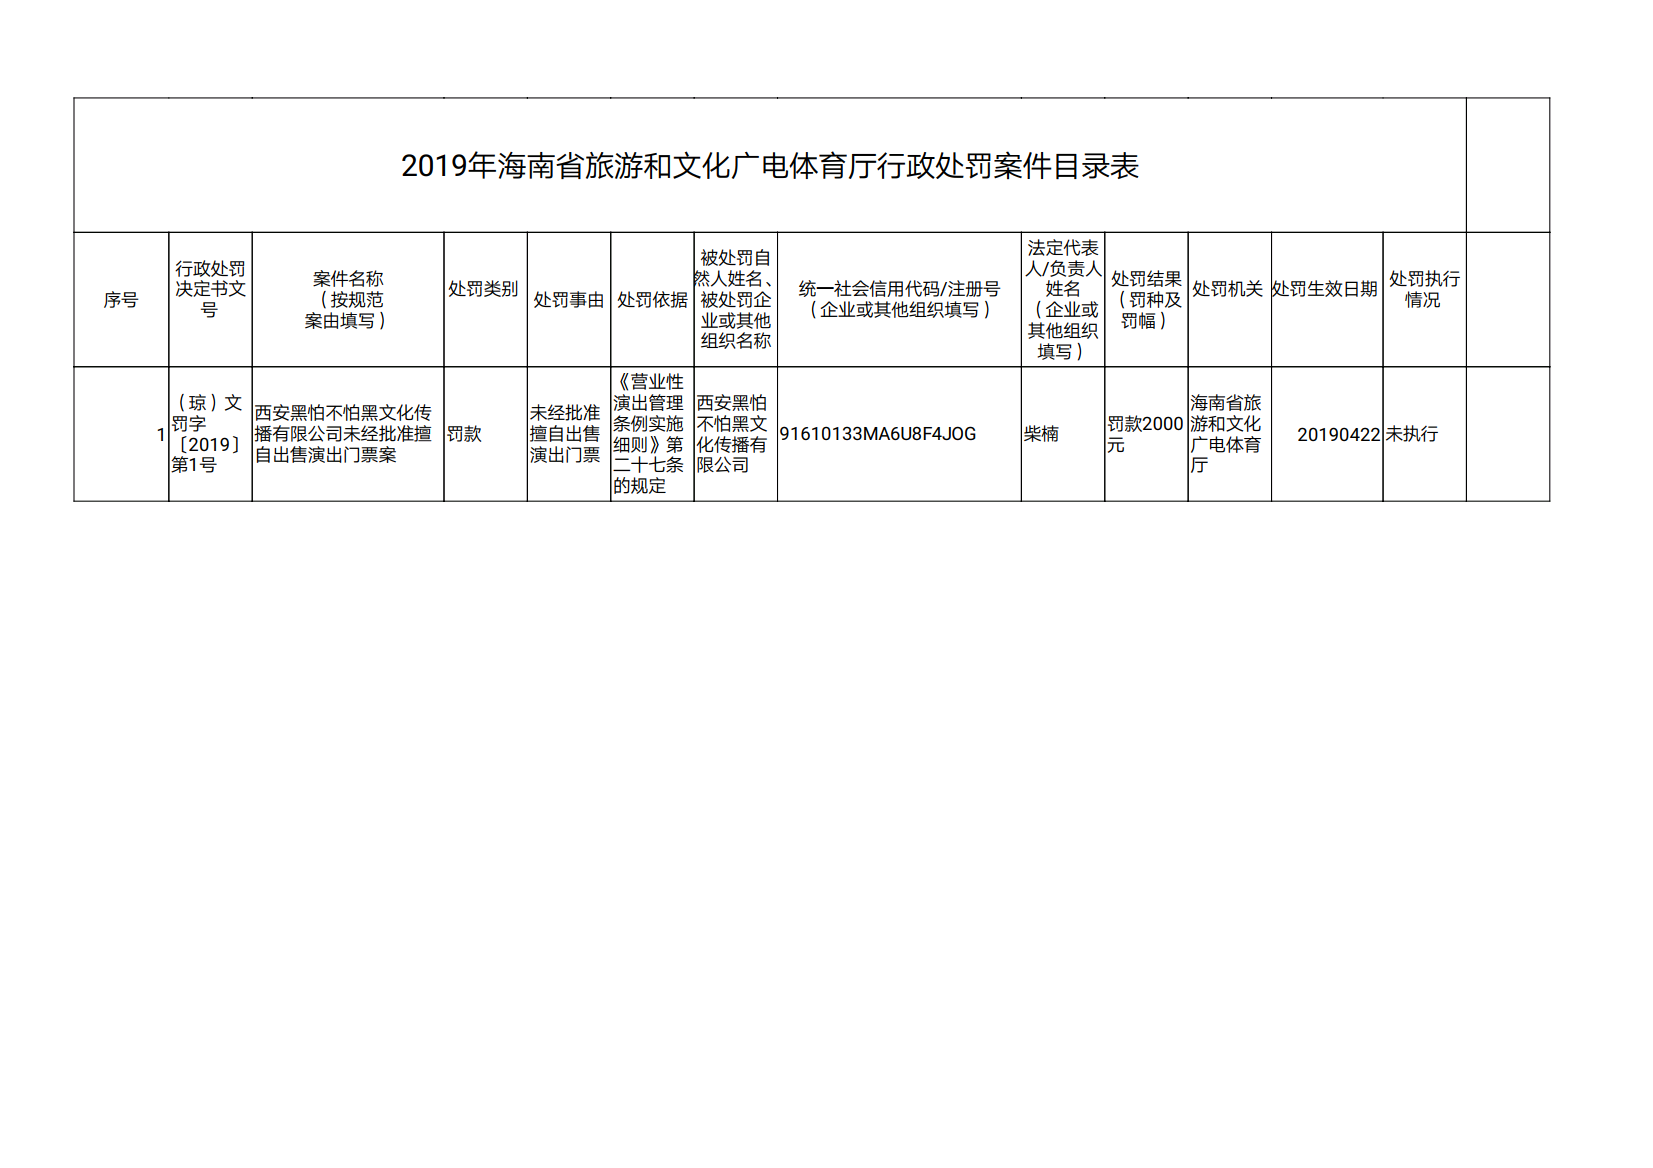 2019年海南省旅游和文化广电体育厅行政处罚案件目录表.png